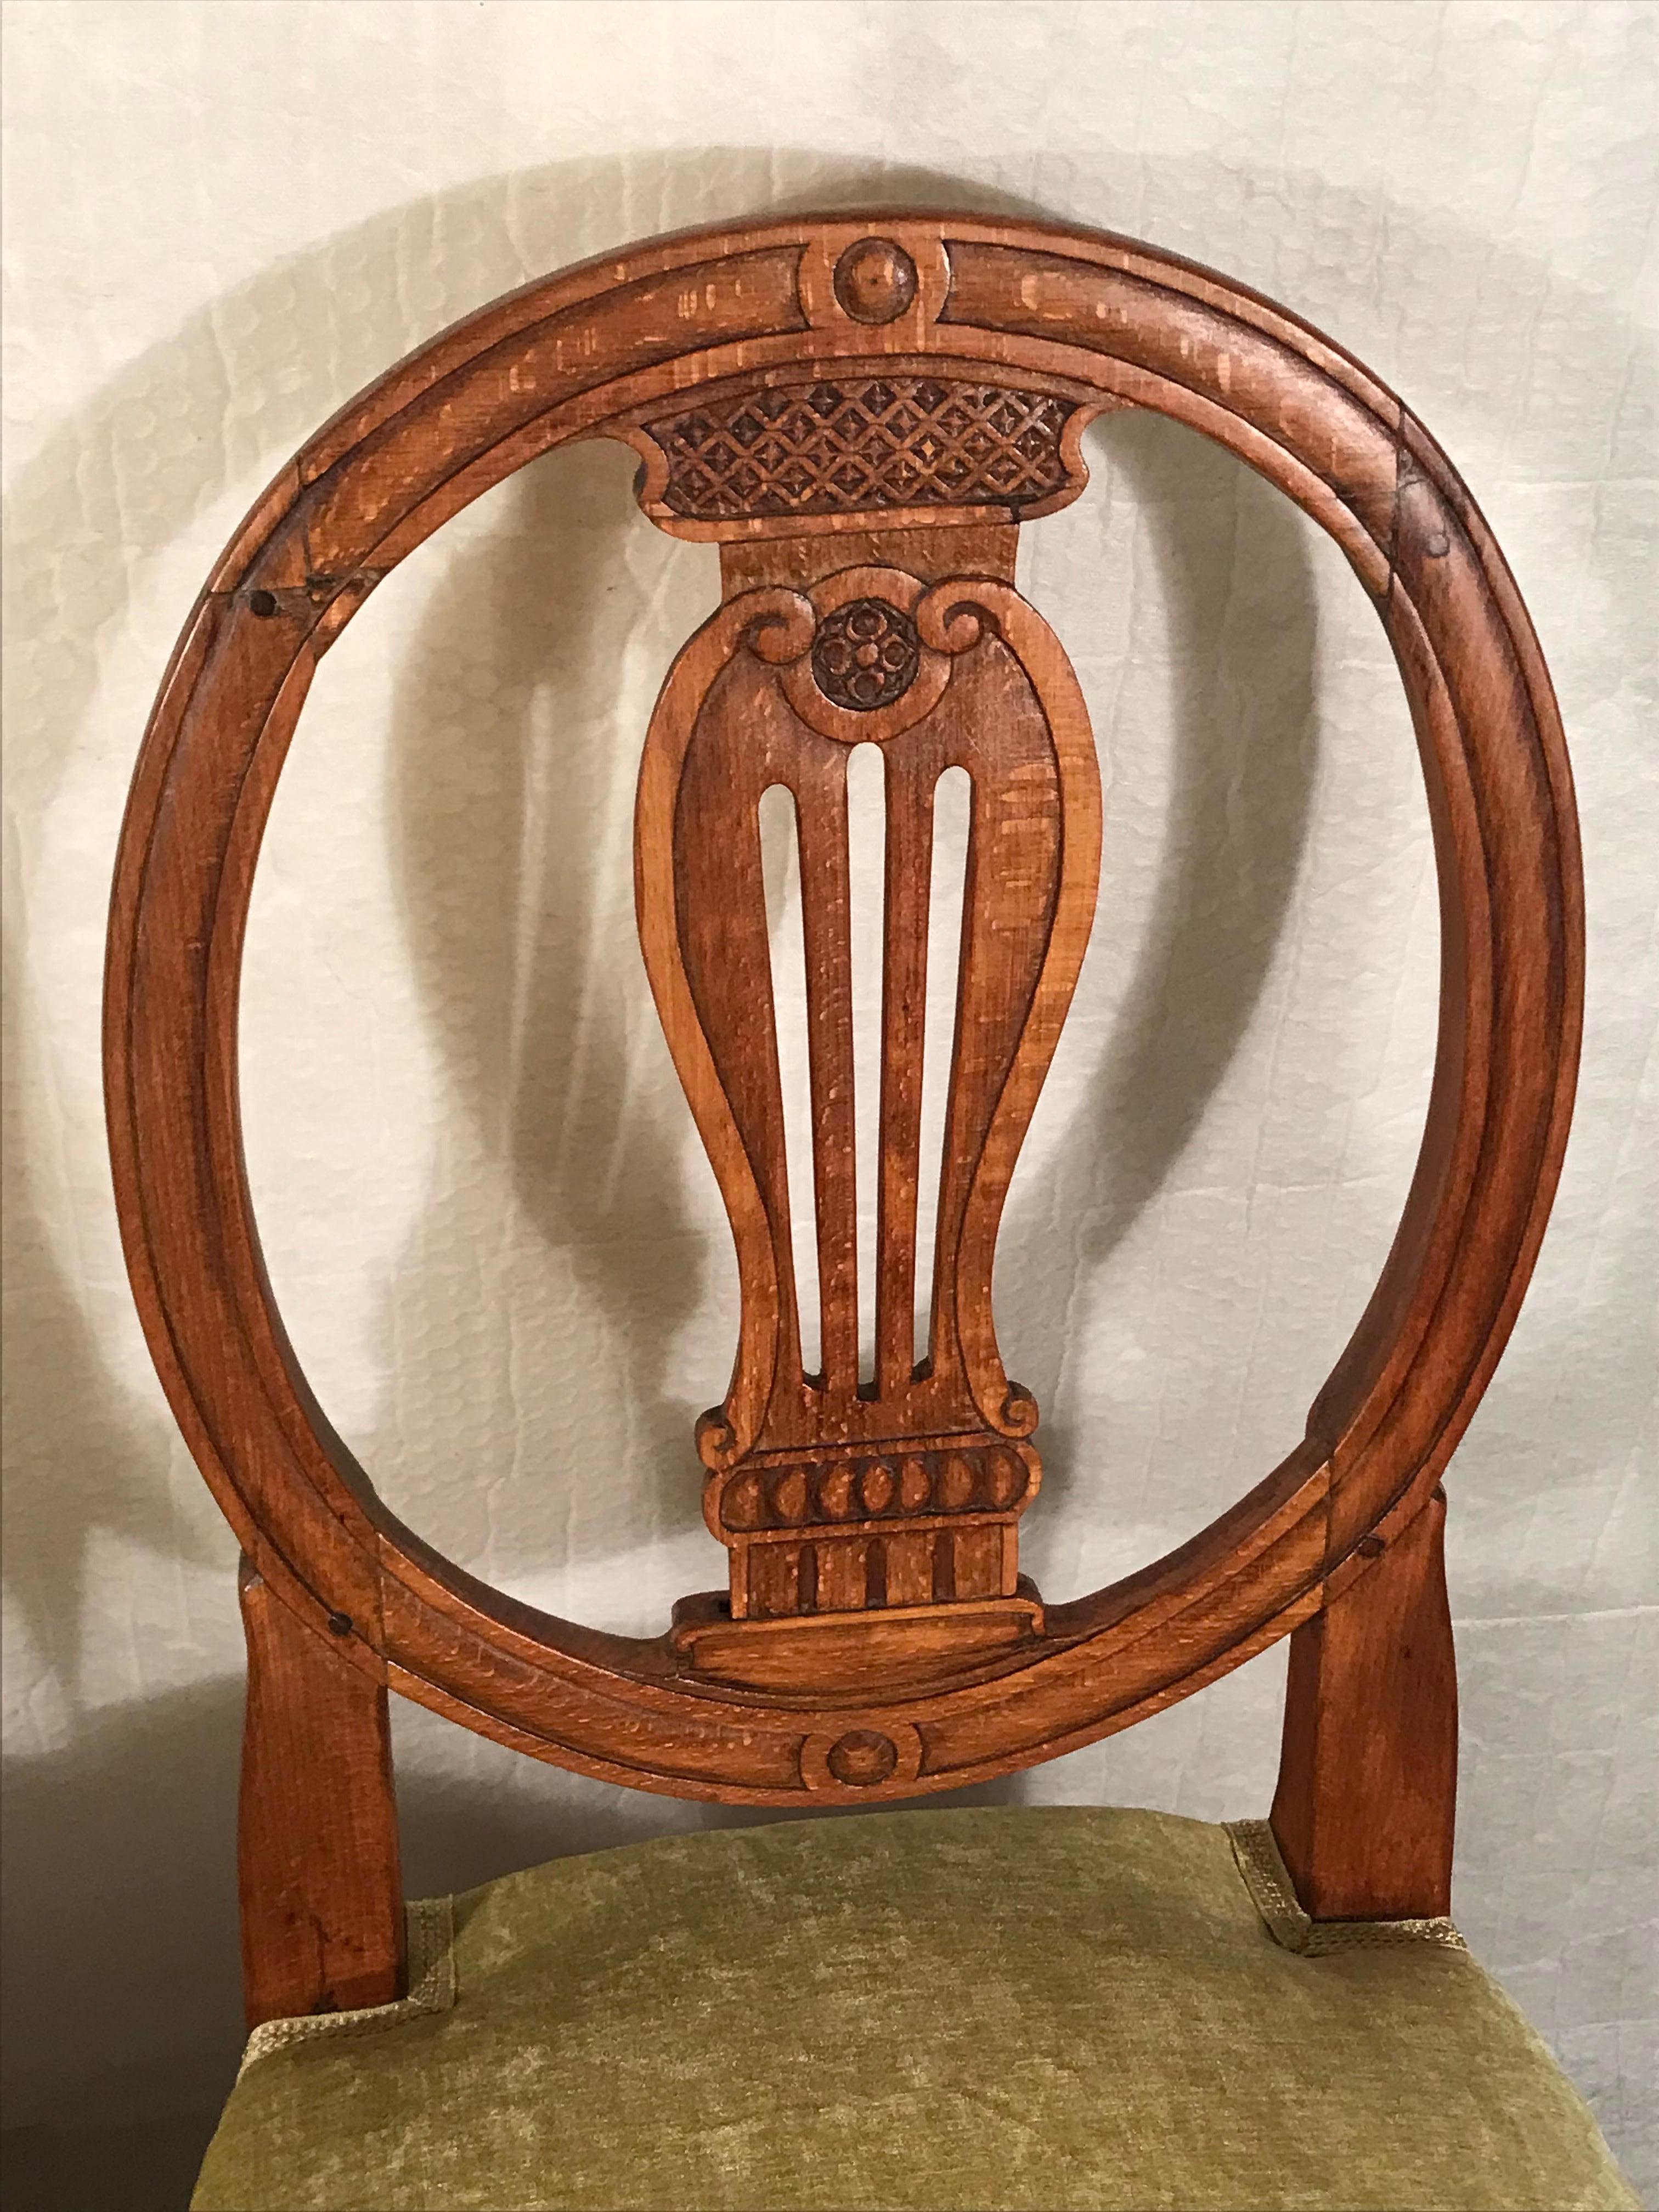 Entdecken Sie die zeitlose Anziehungskraft dieses originalen Paares von Louis-XVI-Beistellstühlen, die aus Süddeutschland stammen und auf die Jahre 1780-1800 zurückgehen. Diese Stühle bestechen durch ihr exquisites Dekor in der Rückenlehne, das in